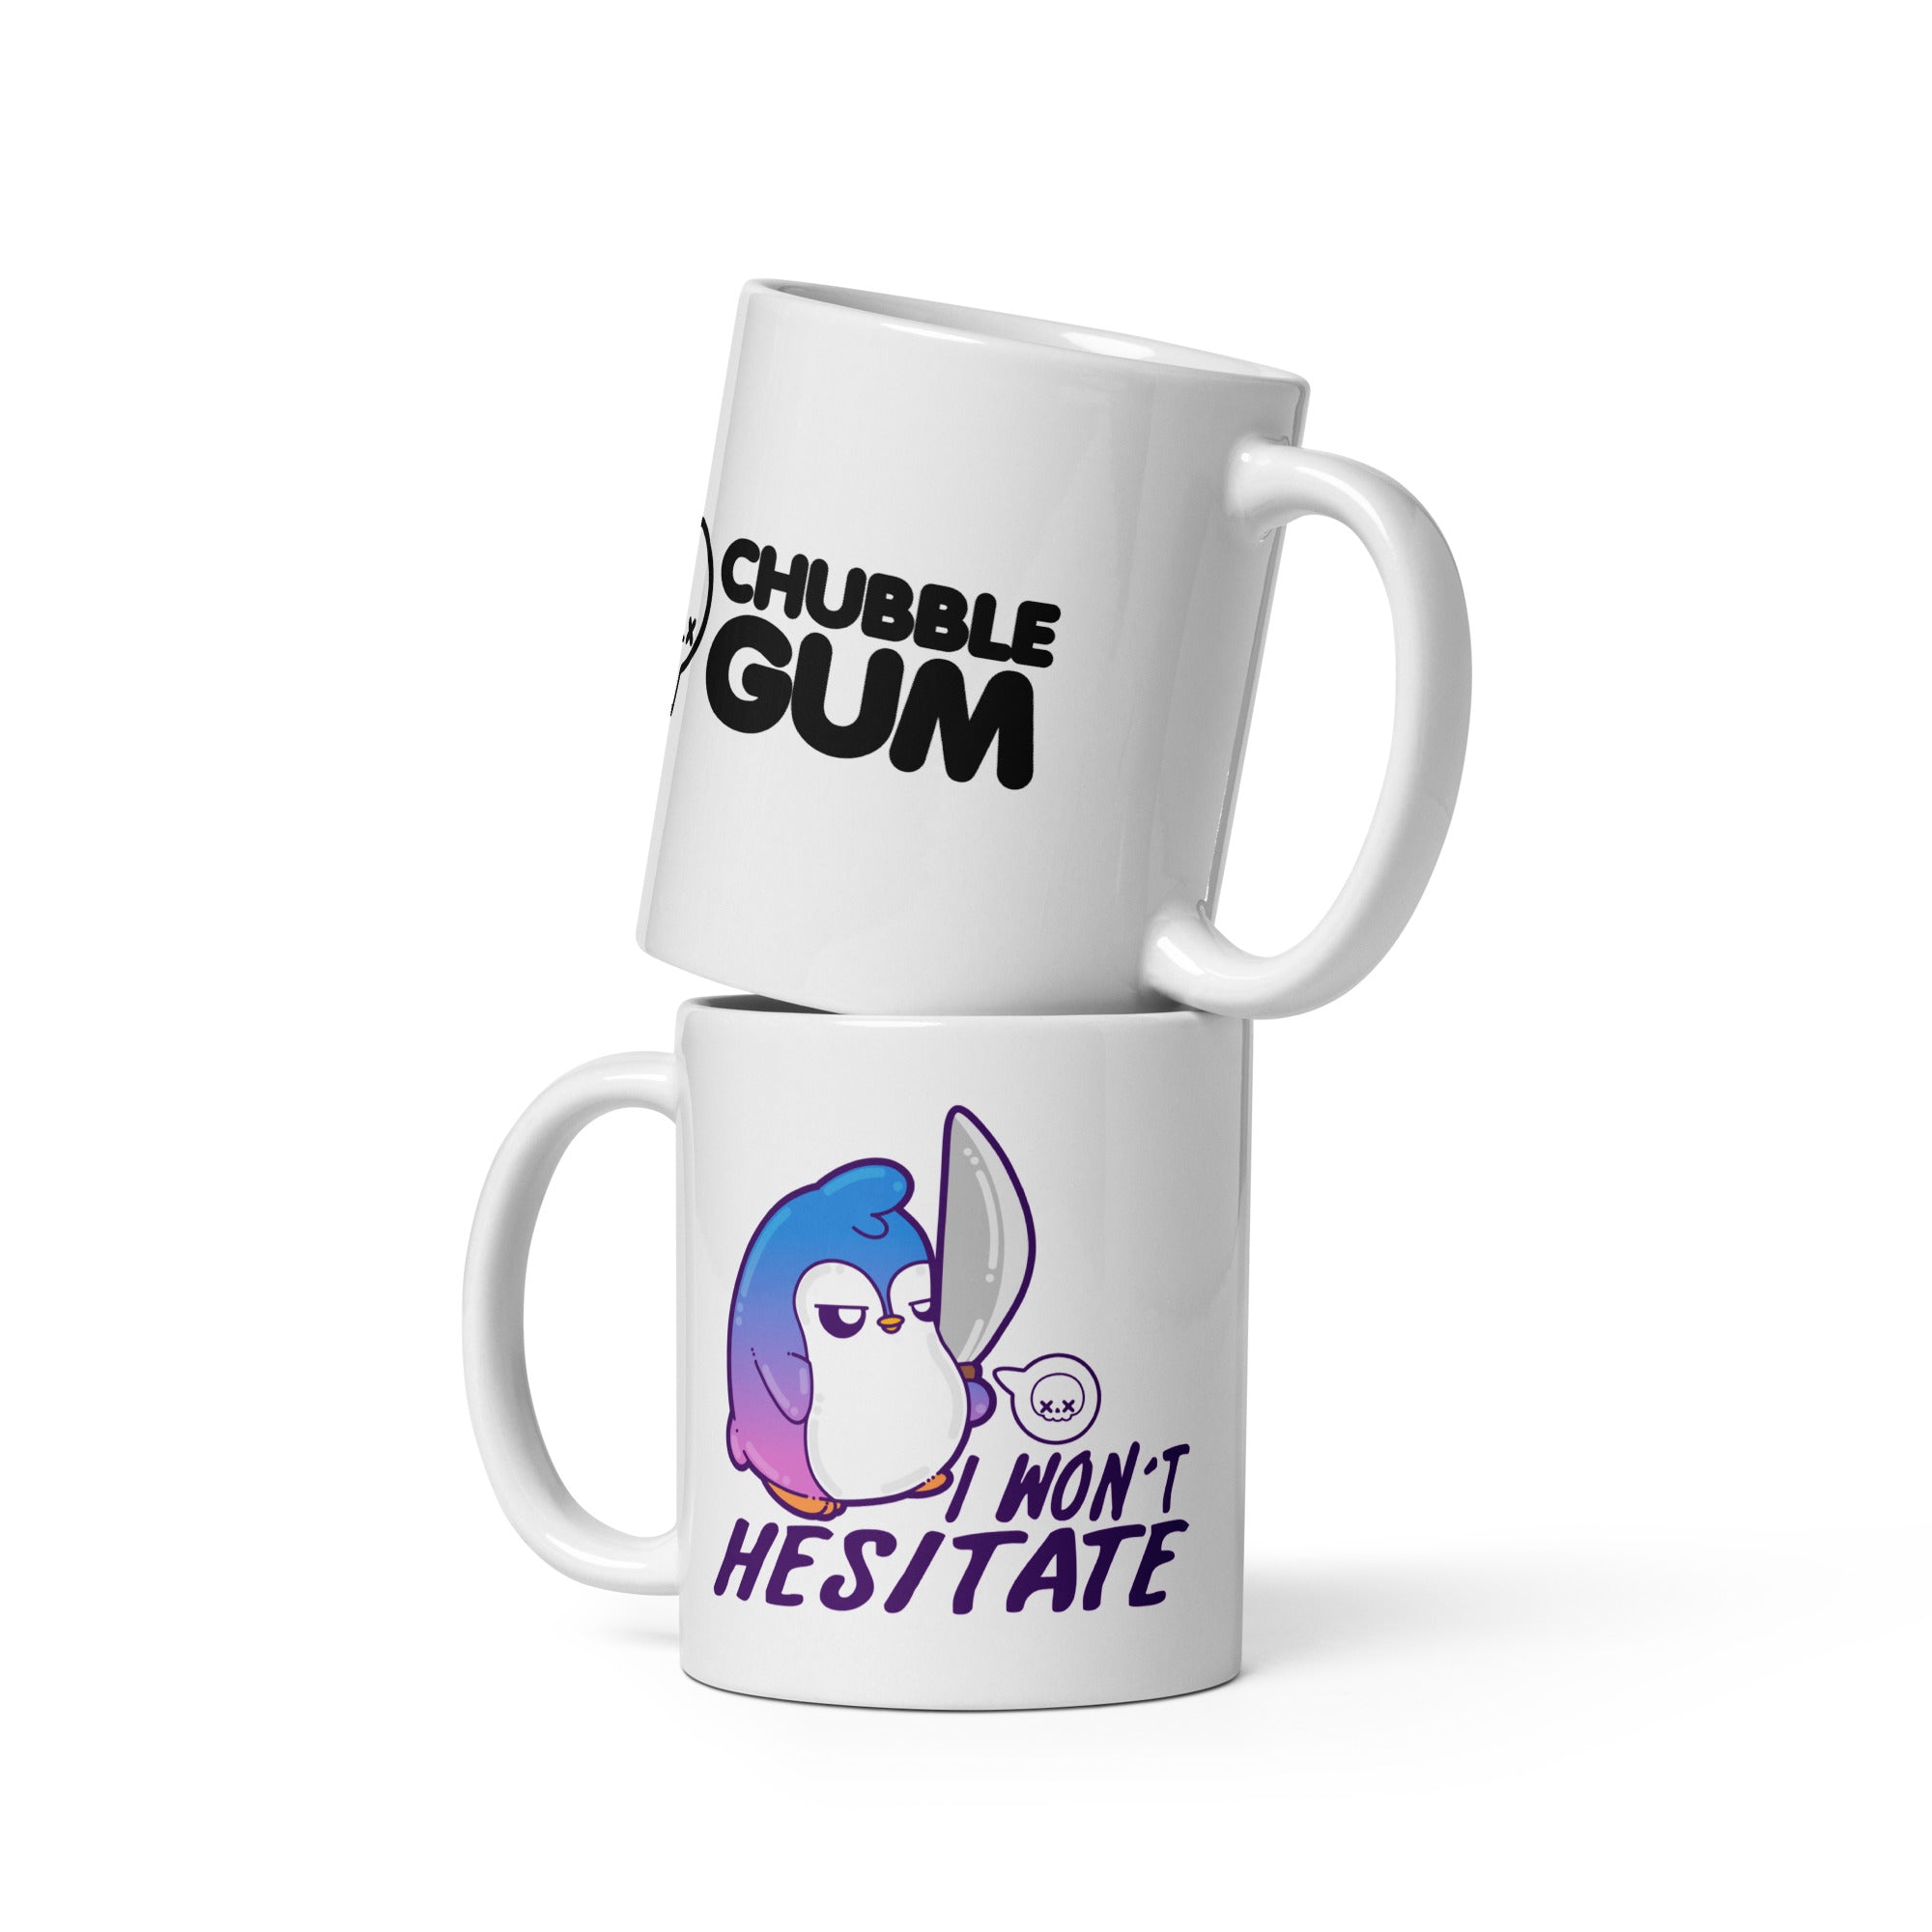 I WONT HESITATE - Coffee Mug - ChubbleGumLLC